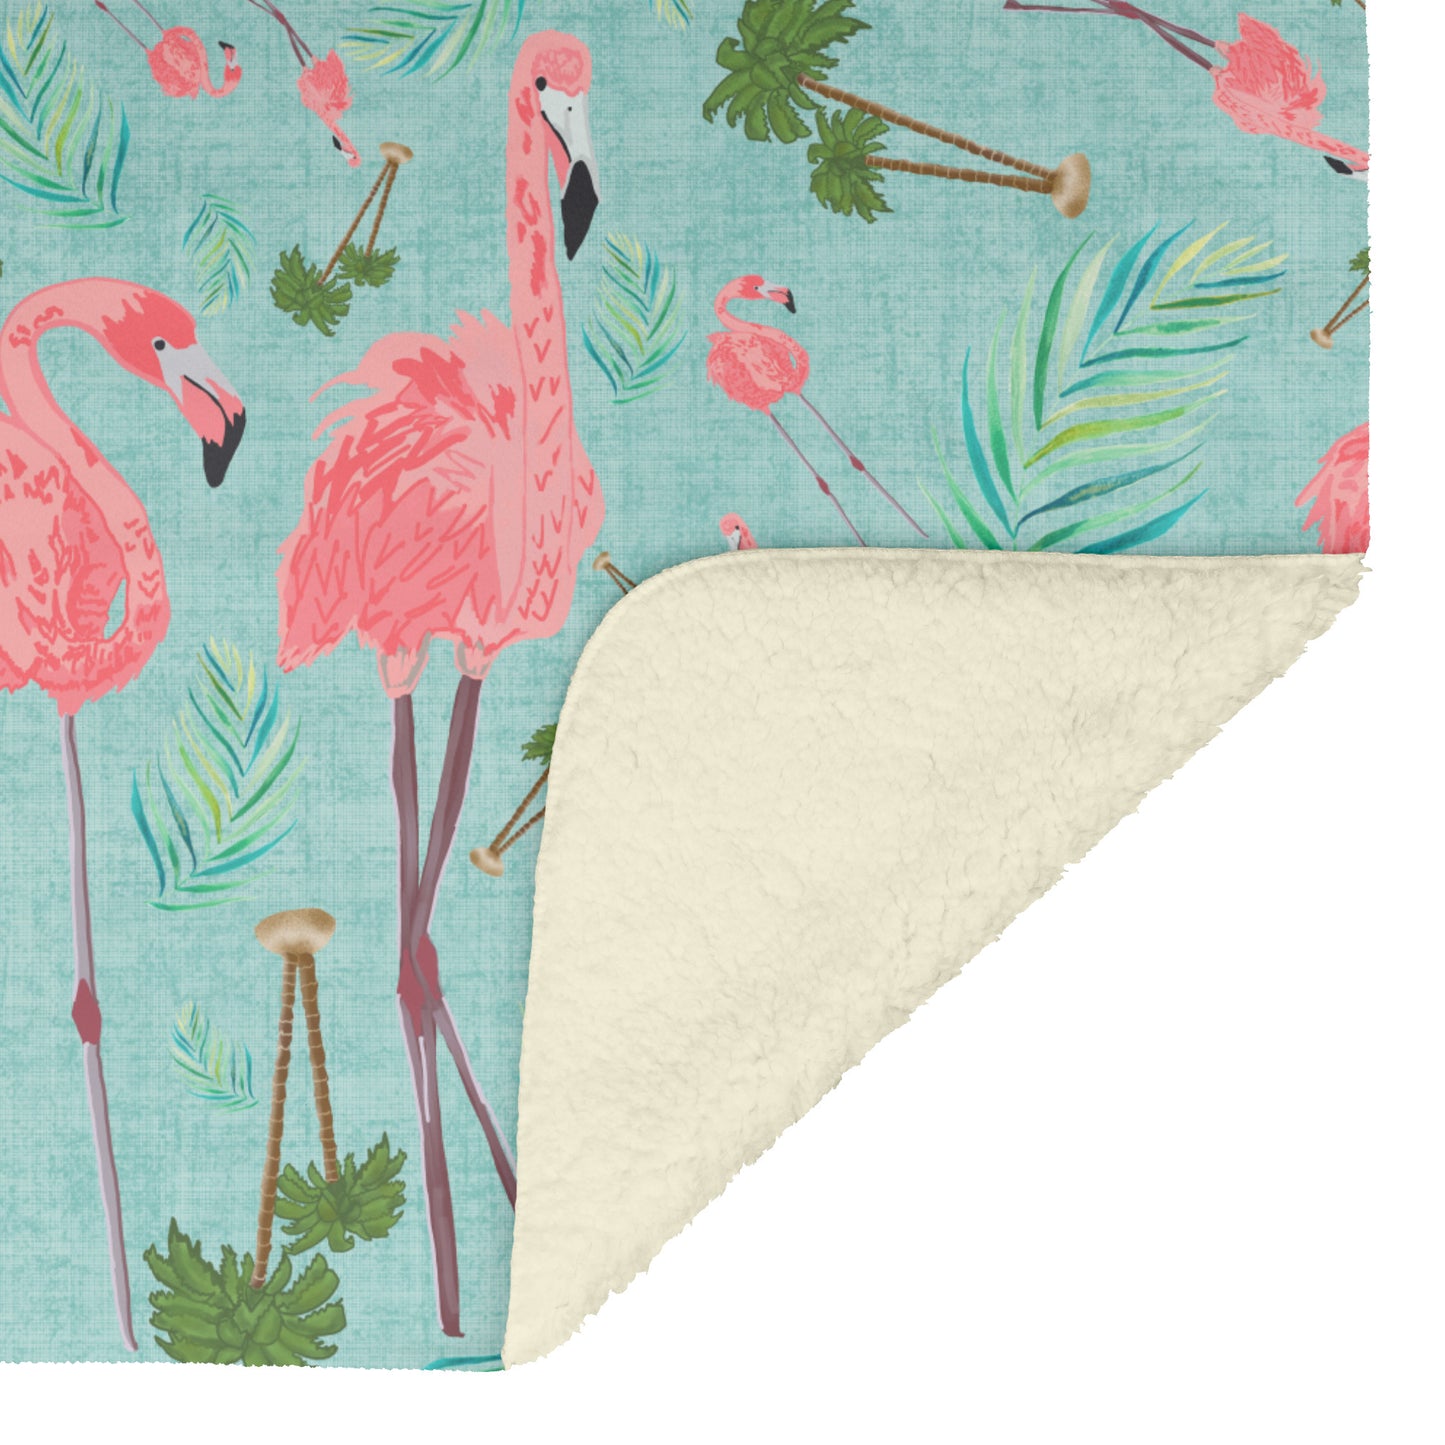 Flamingos on Succulent Linen Textured Background, Fleece Blanket